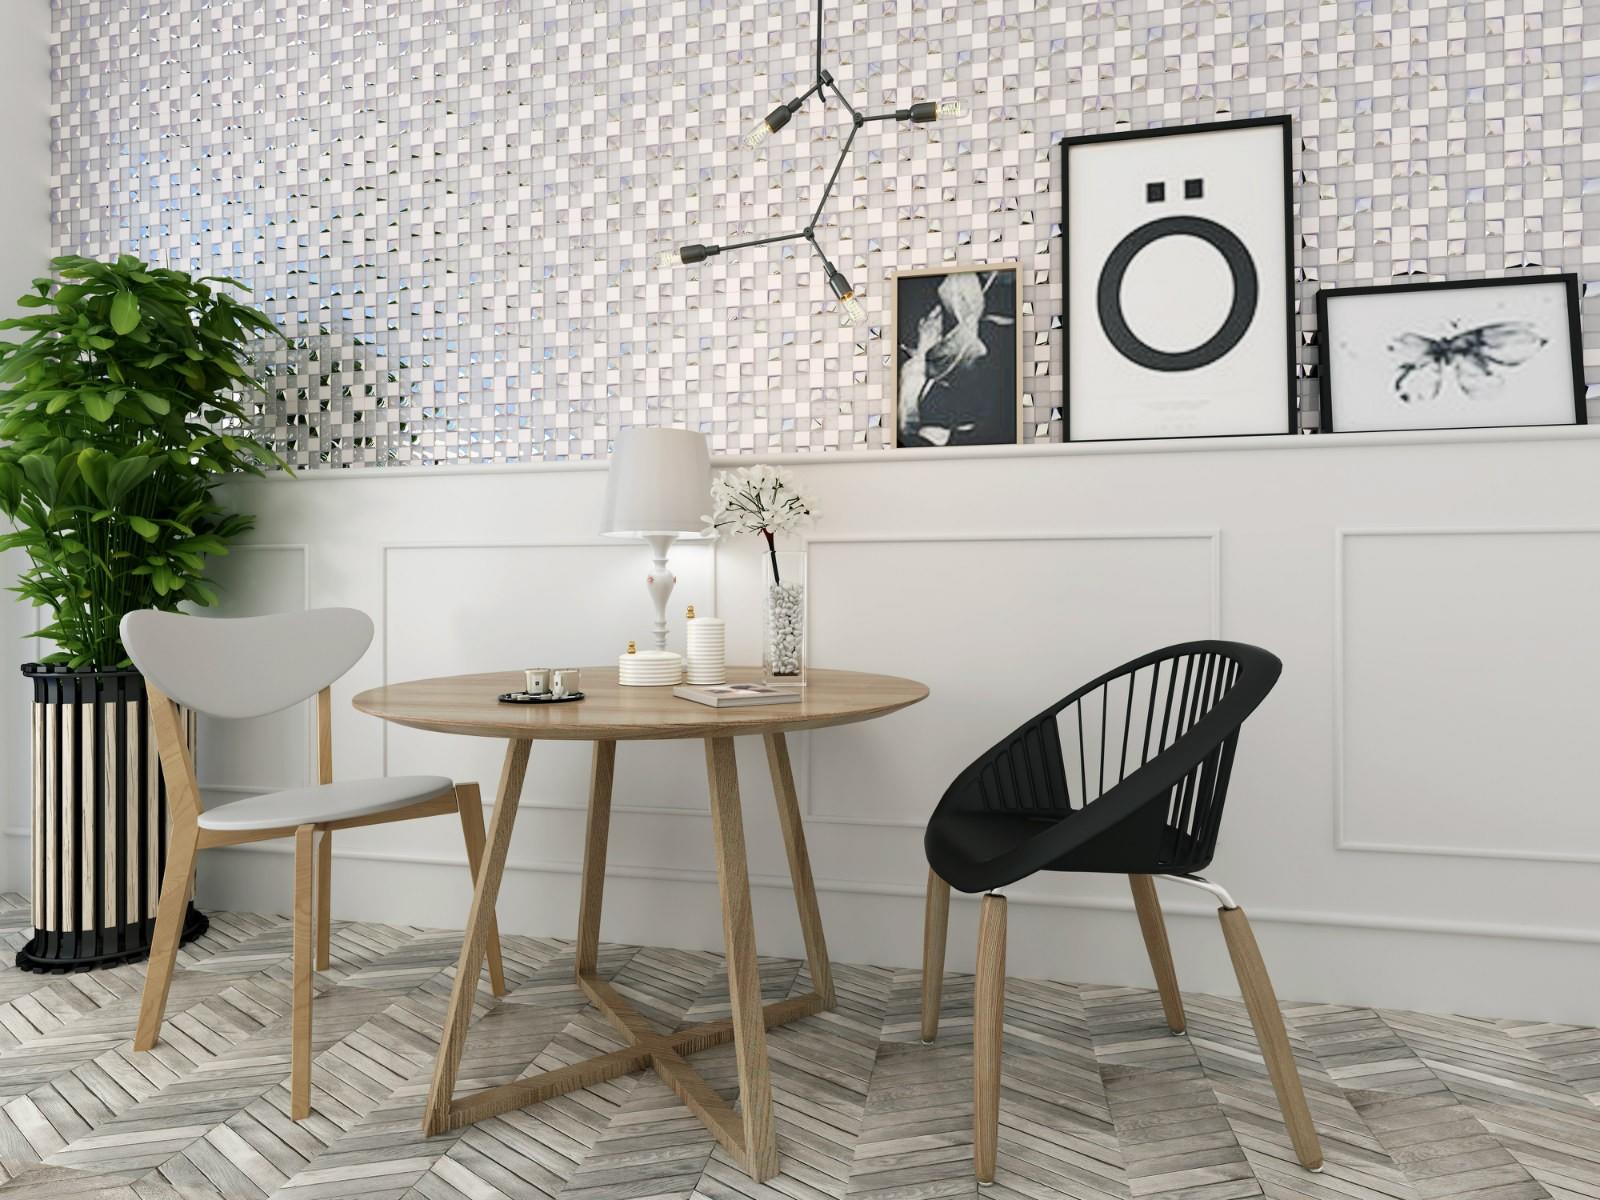 3x3 bevel tile white supplier for living room